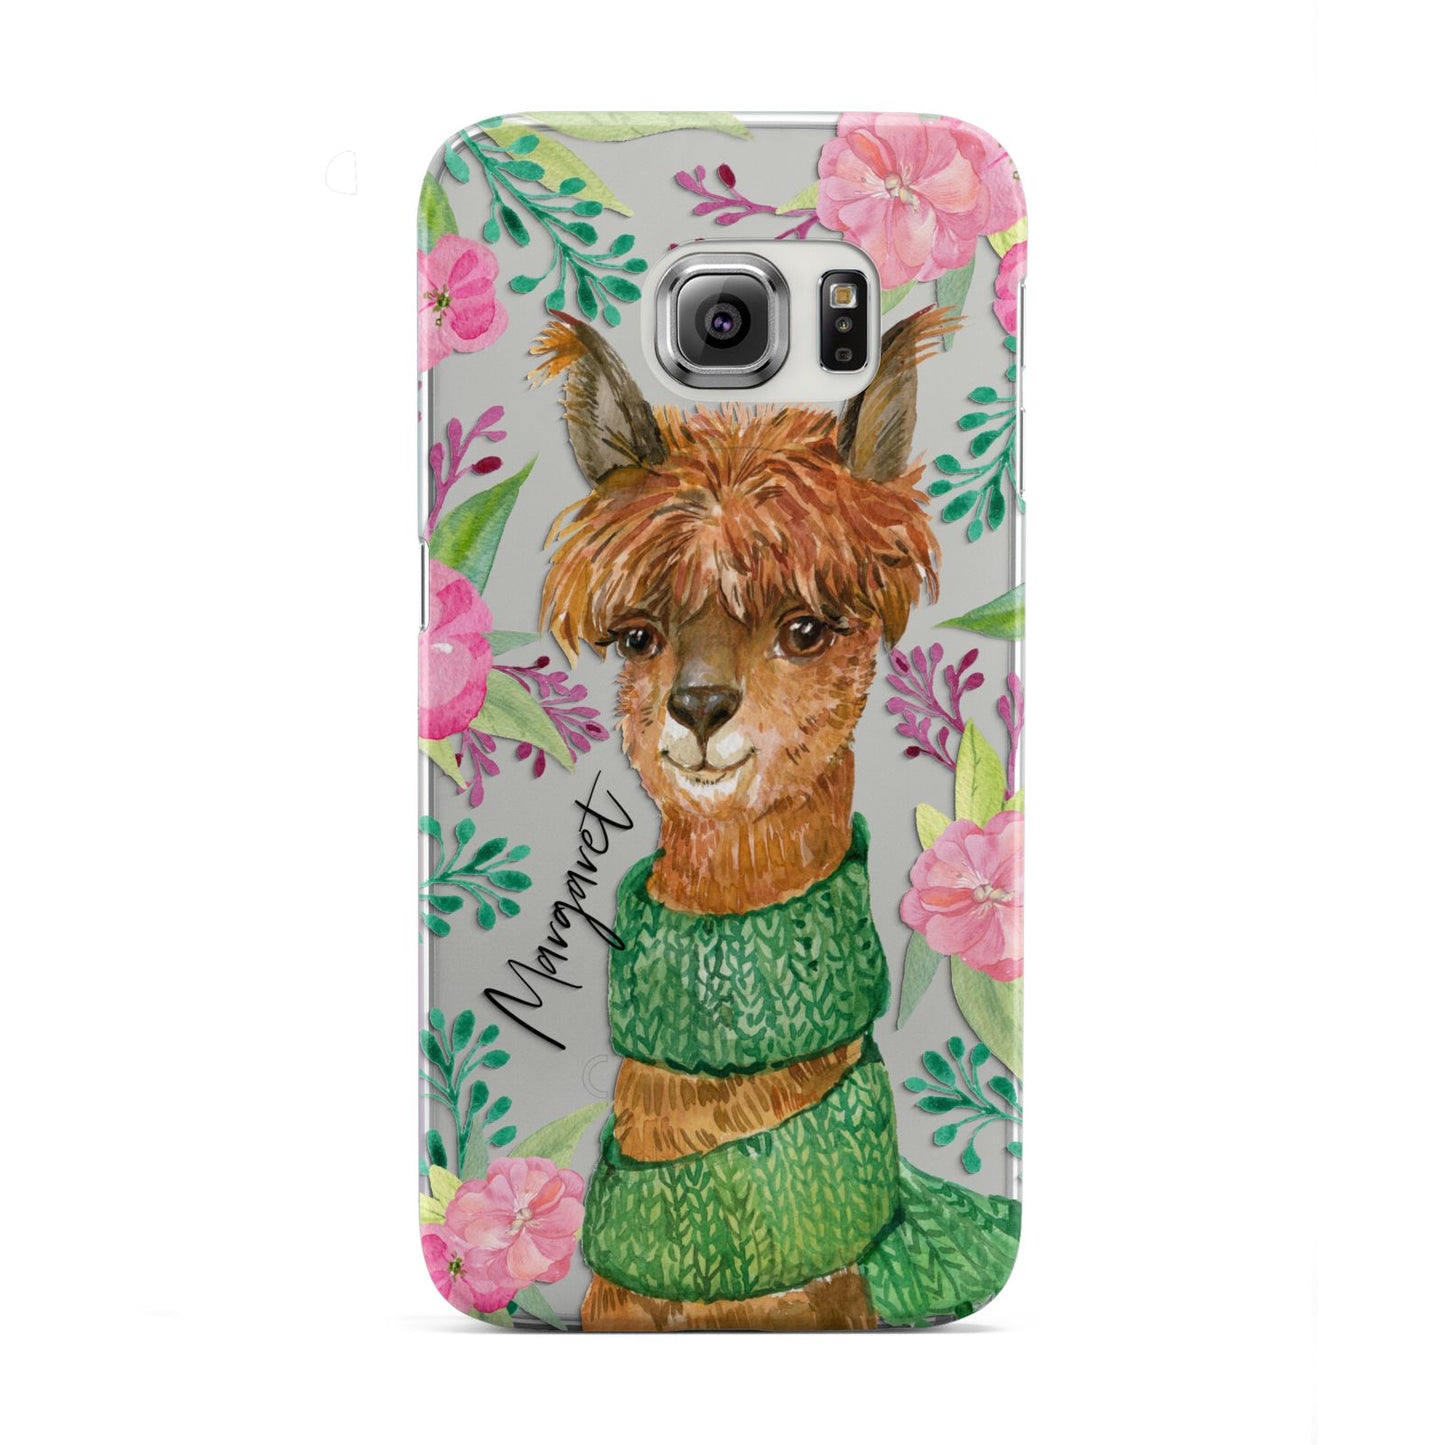 Personalised Alpaca Samsung Galaxy S6 Edge Case